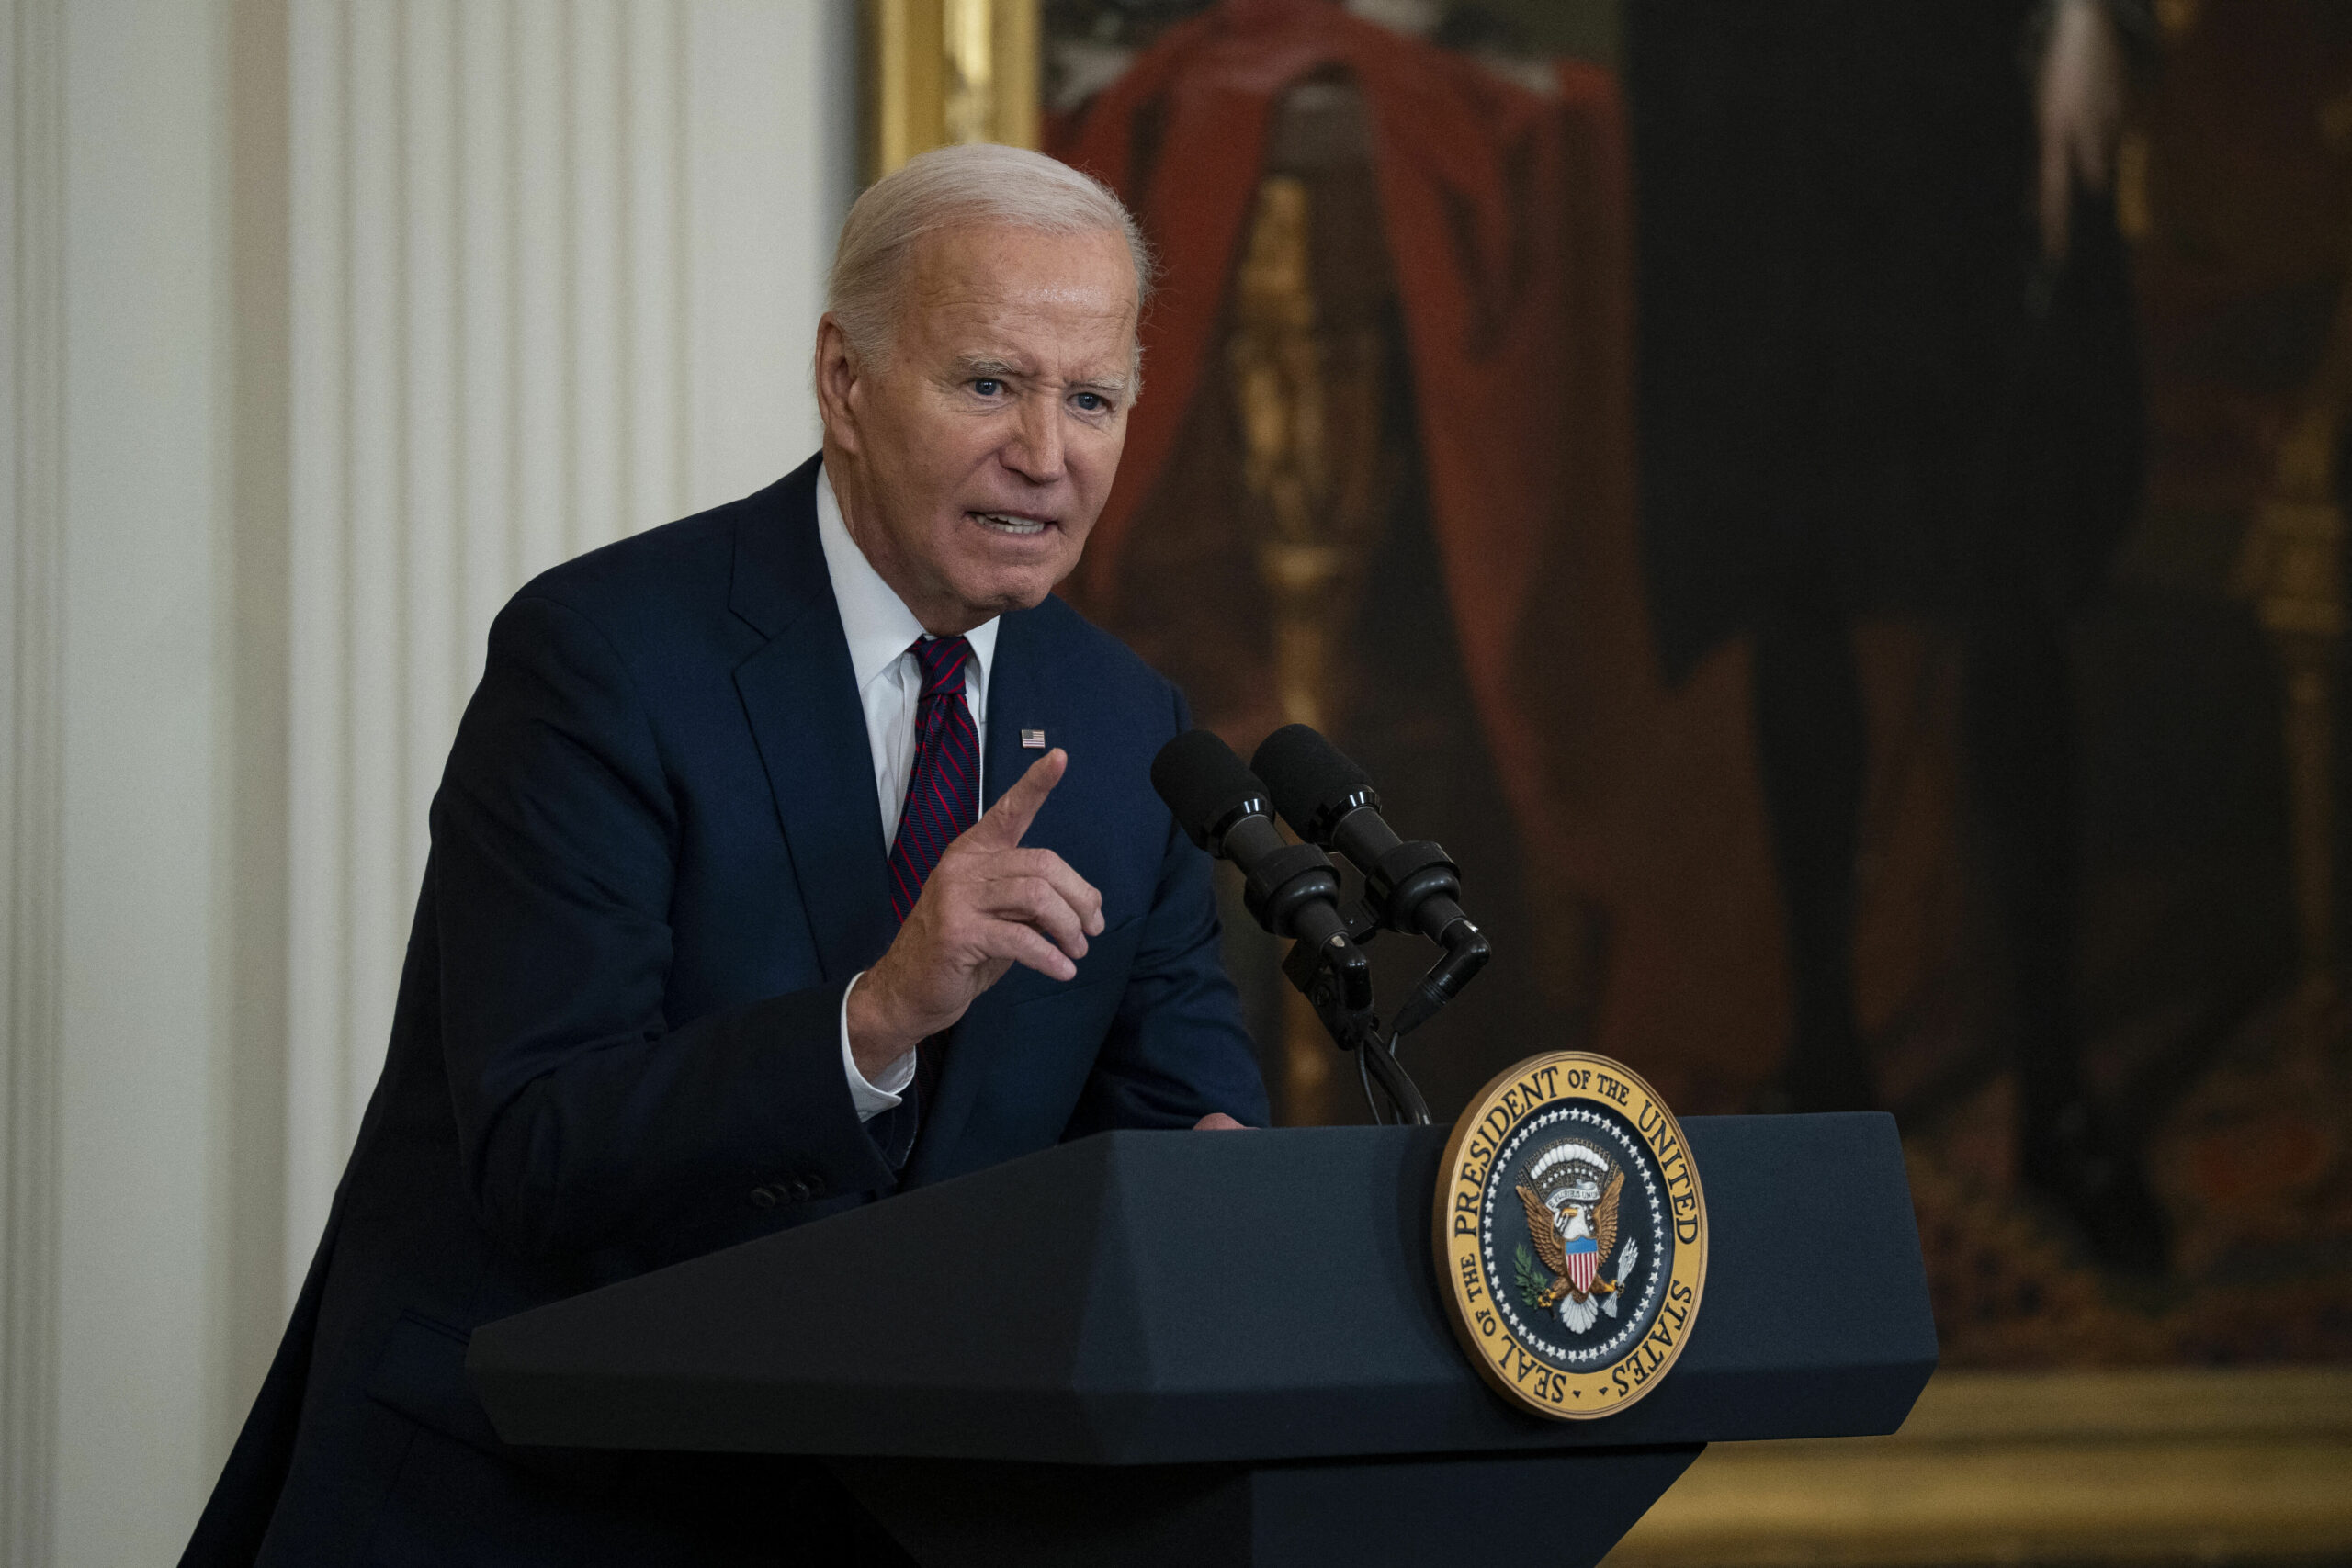 Președintele lui Joe Biden este Donald TRUMP / Biden îl numește pe rivalul său „președinte în exercițiu”